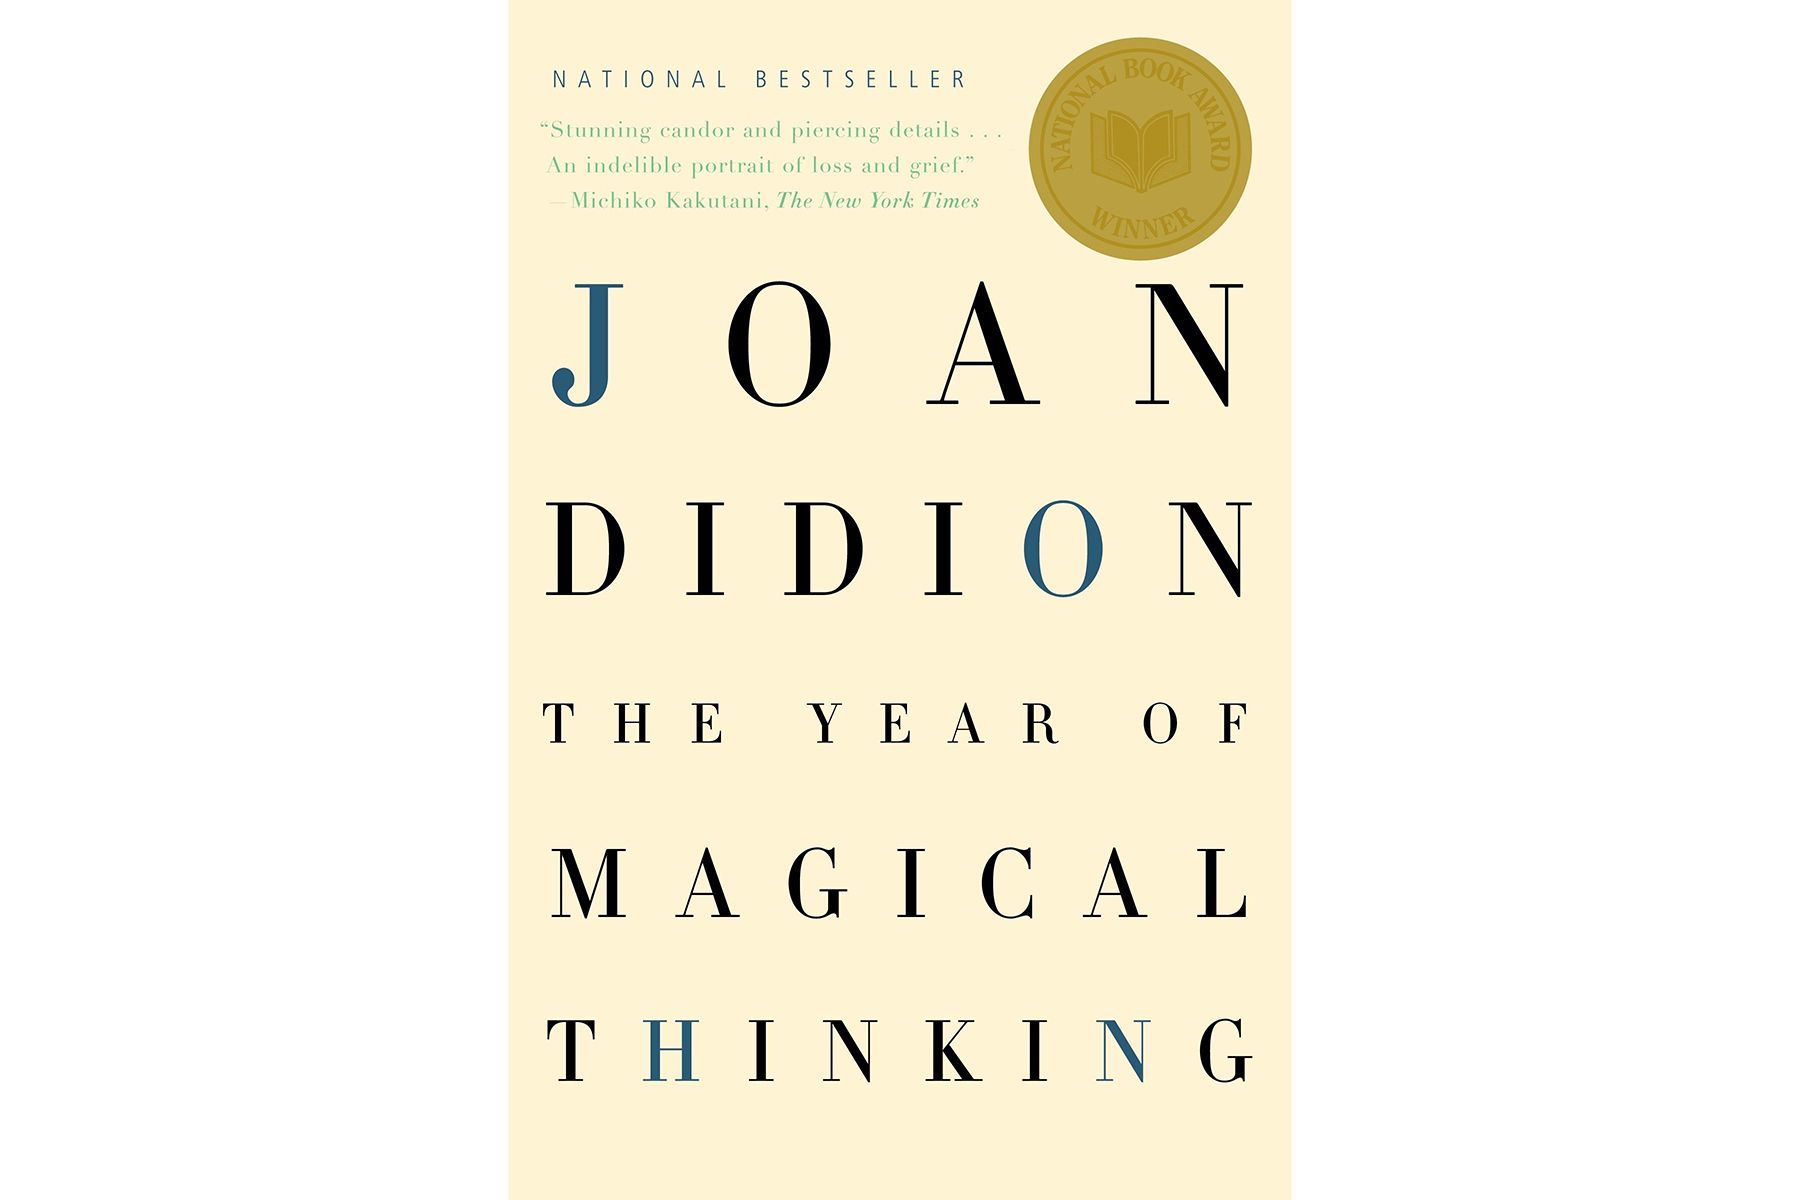 Cover des Jahres des magischen Denkens von Joan Didion